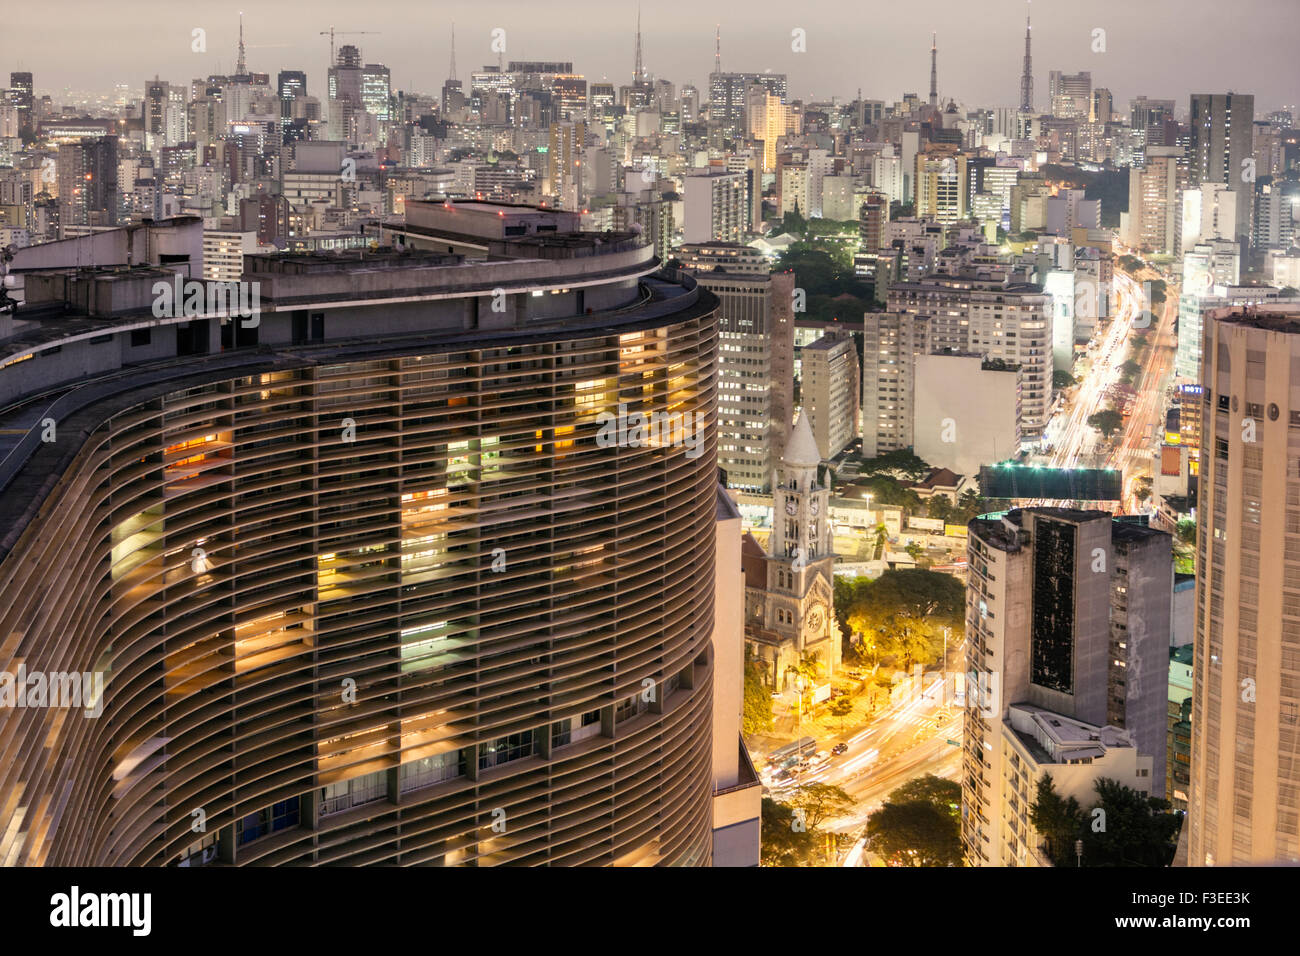 Oscar Niemeyer's Edificio Copan and central Sao Paulo Stock Photo